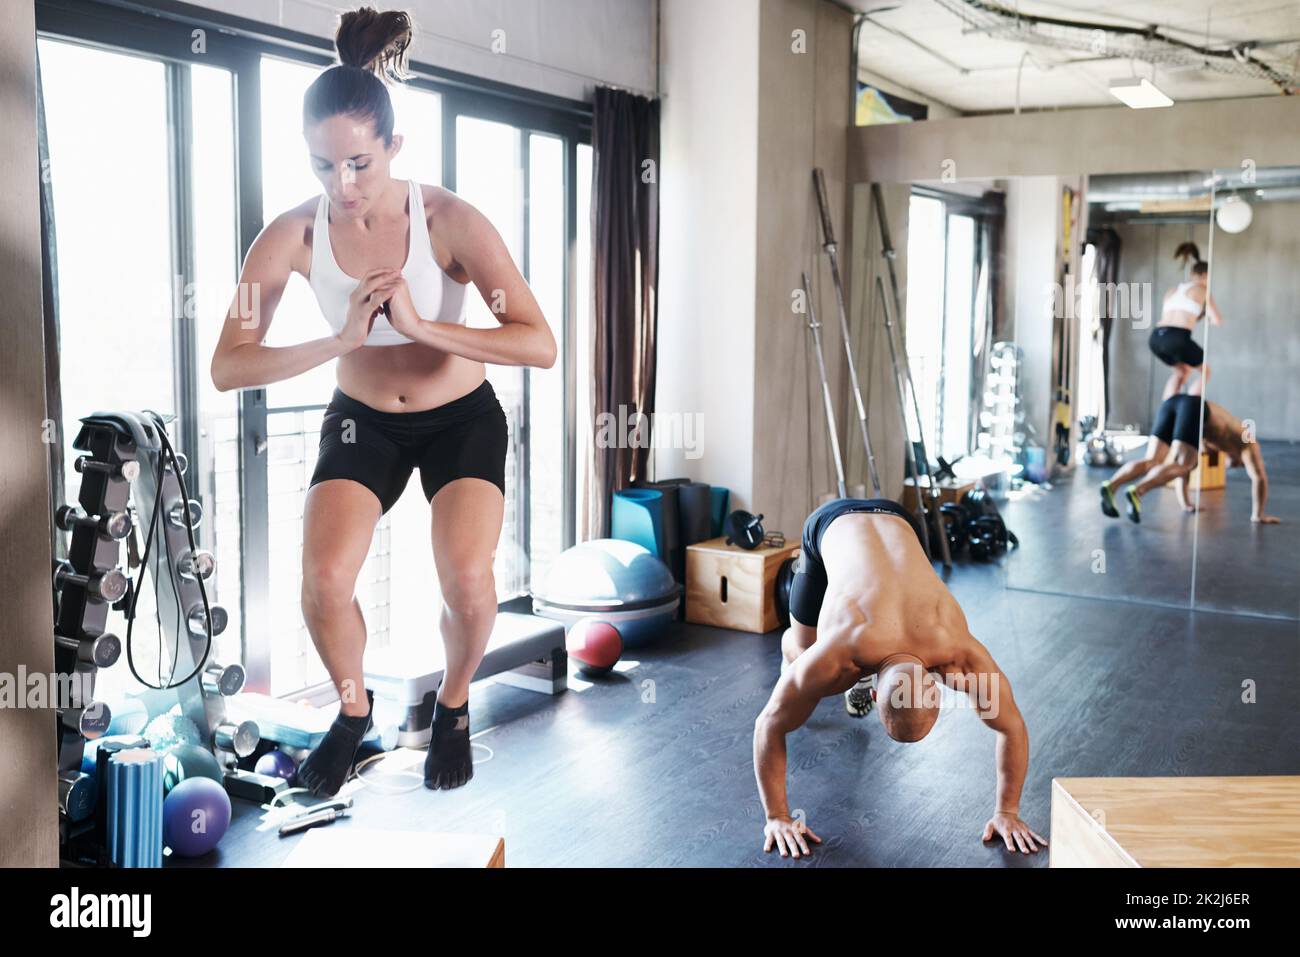 Training, um fit zu werden. Aufnahme eines Mannes und einer Frau, die gemeinsam im Fitnessstudio trainieren. Stockfoto